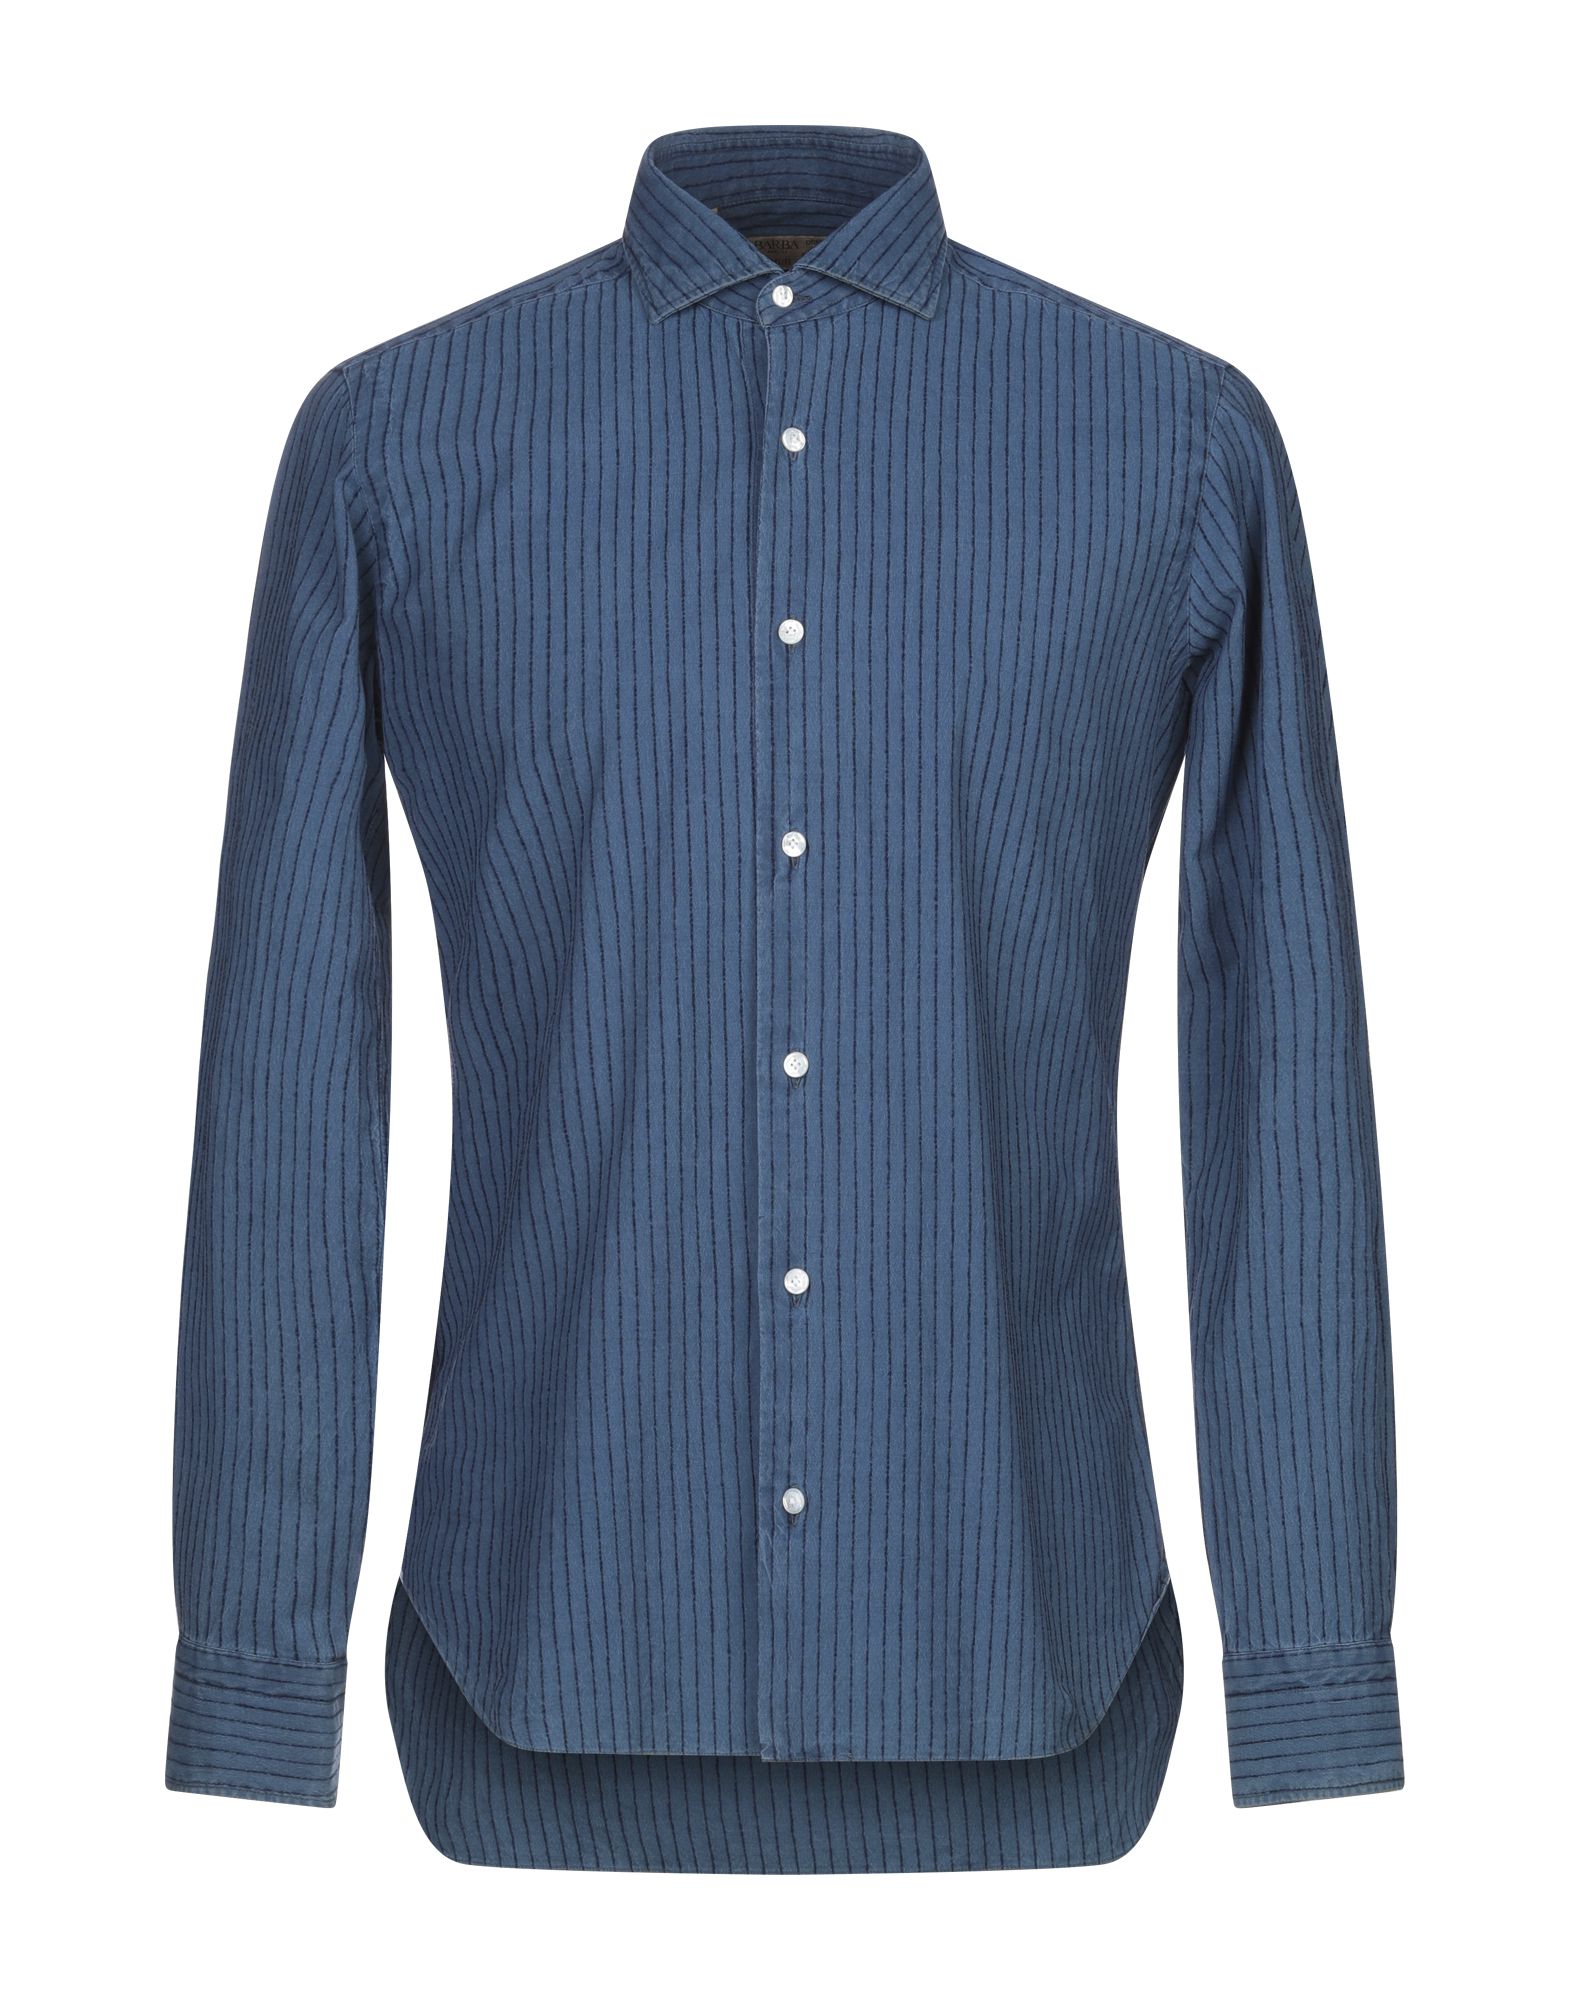 《送料無料》BARBA Napoli メンズ デニムシャツ ブルー 39 コットン 100%